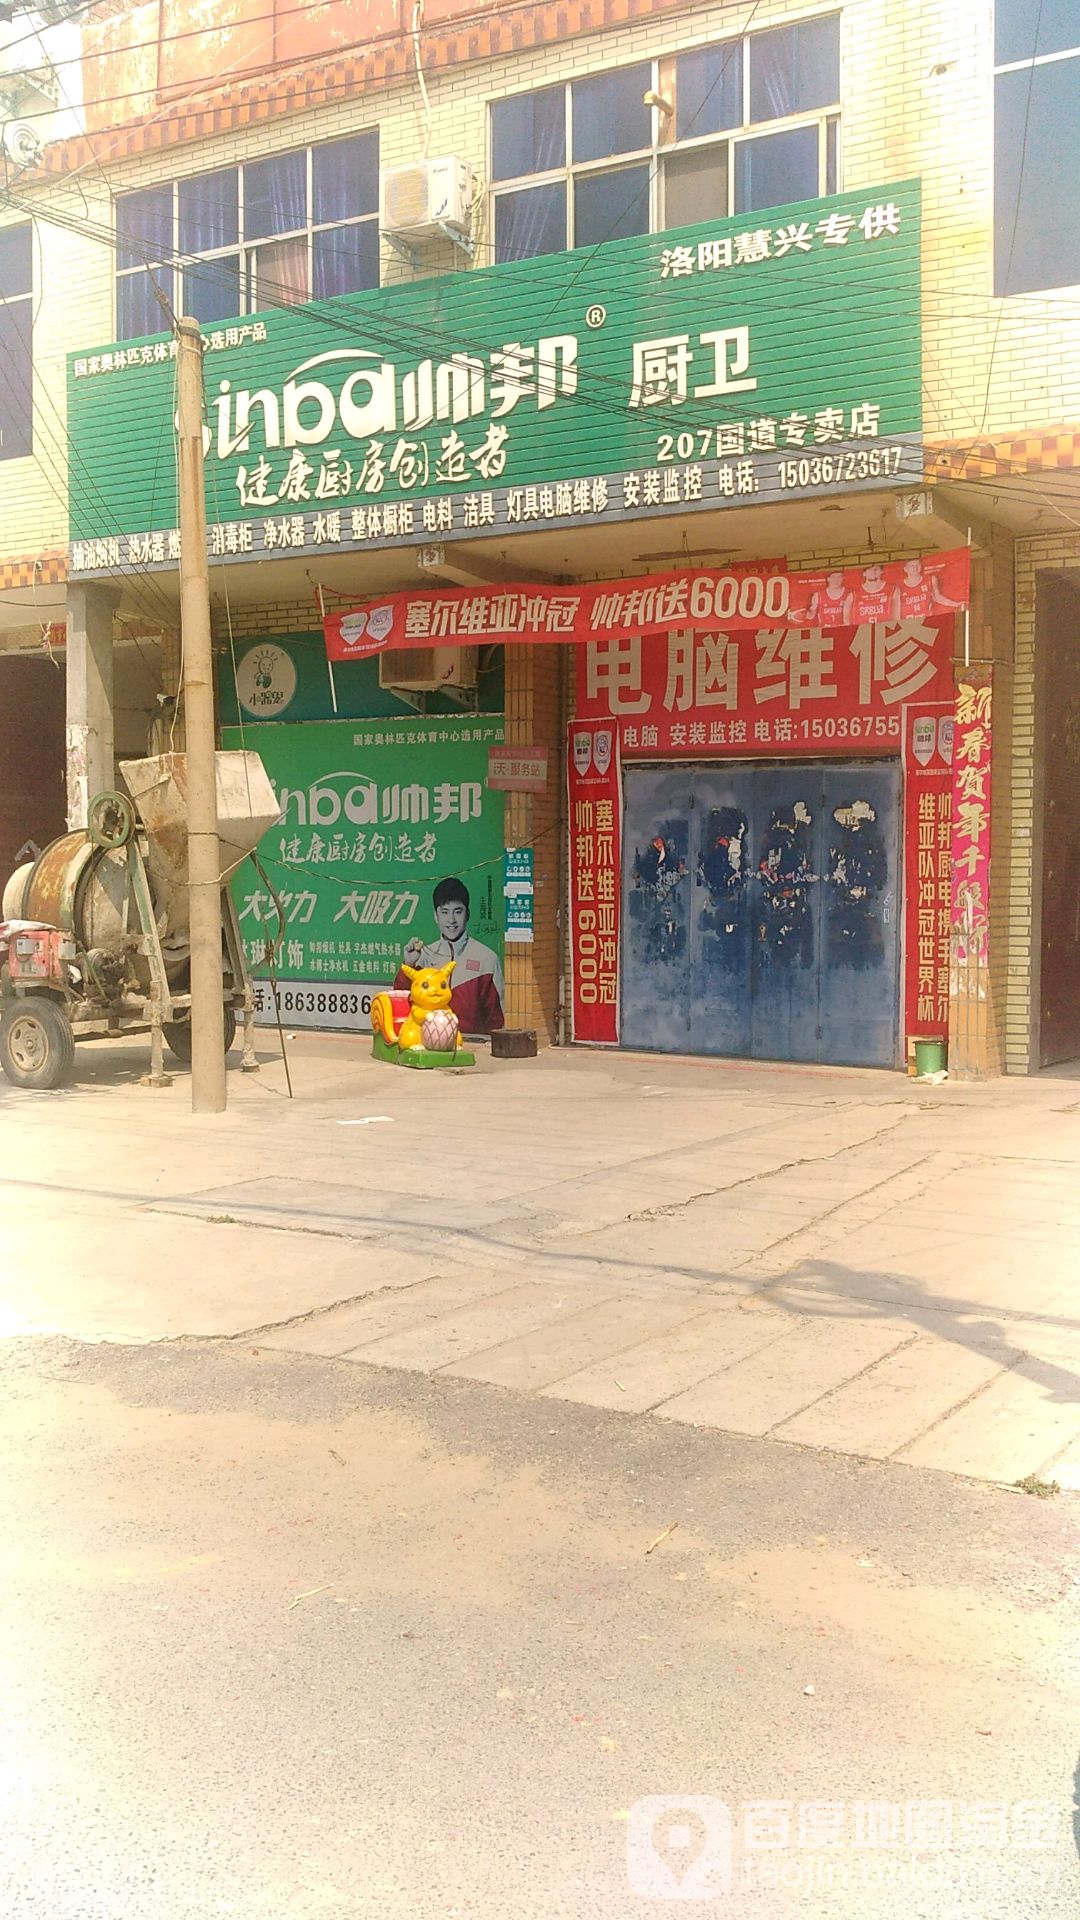 帥邦廚衛(207國道專賣店)